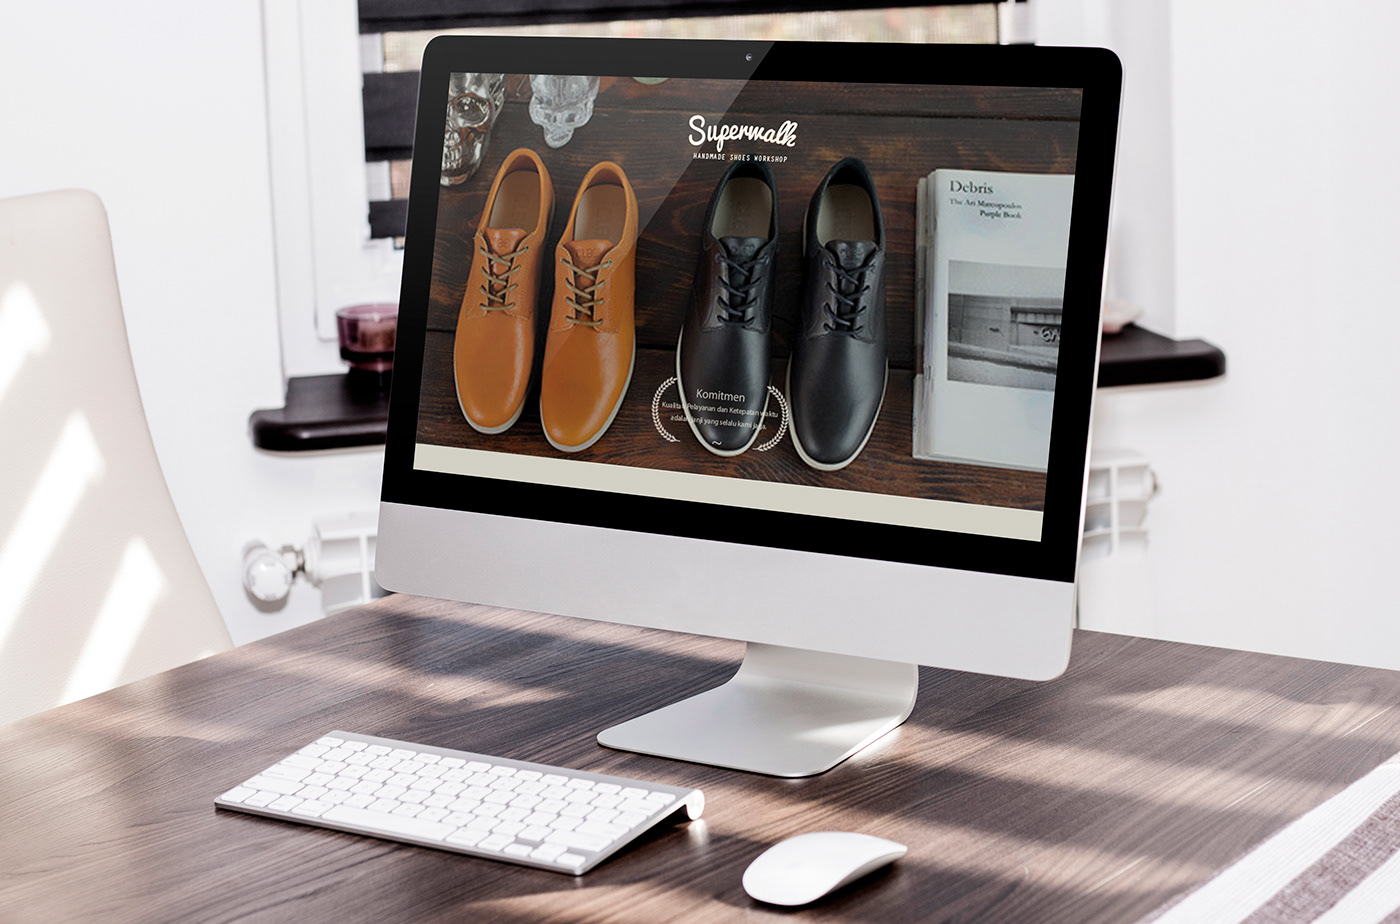 Website Web Design  web development  shoes